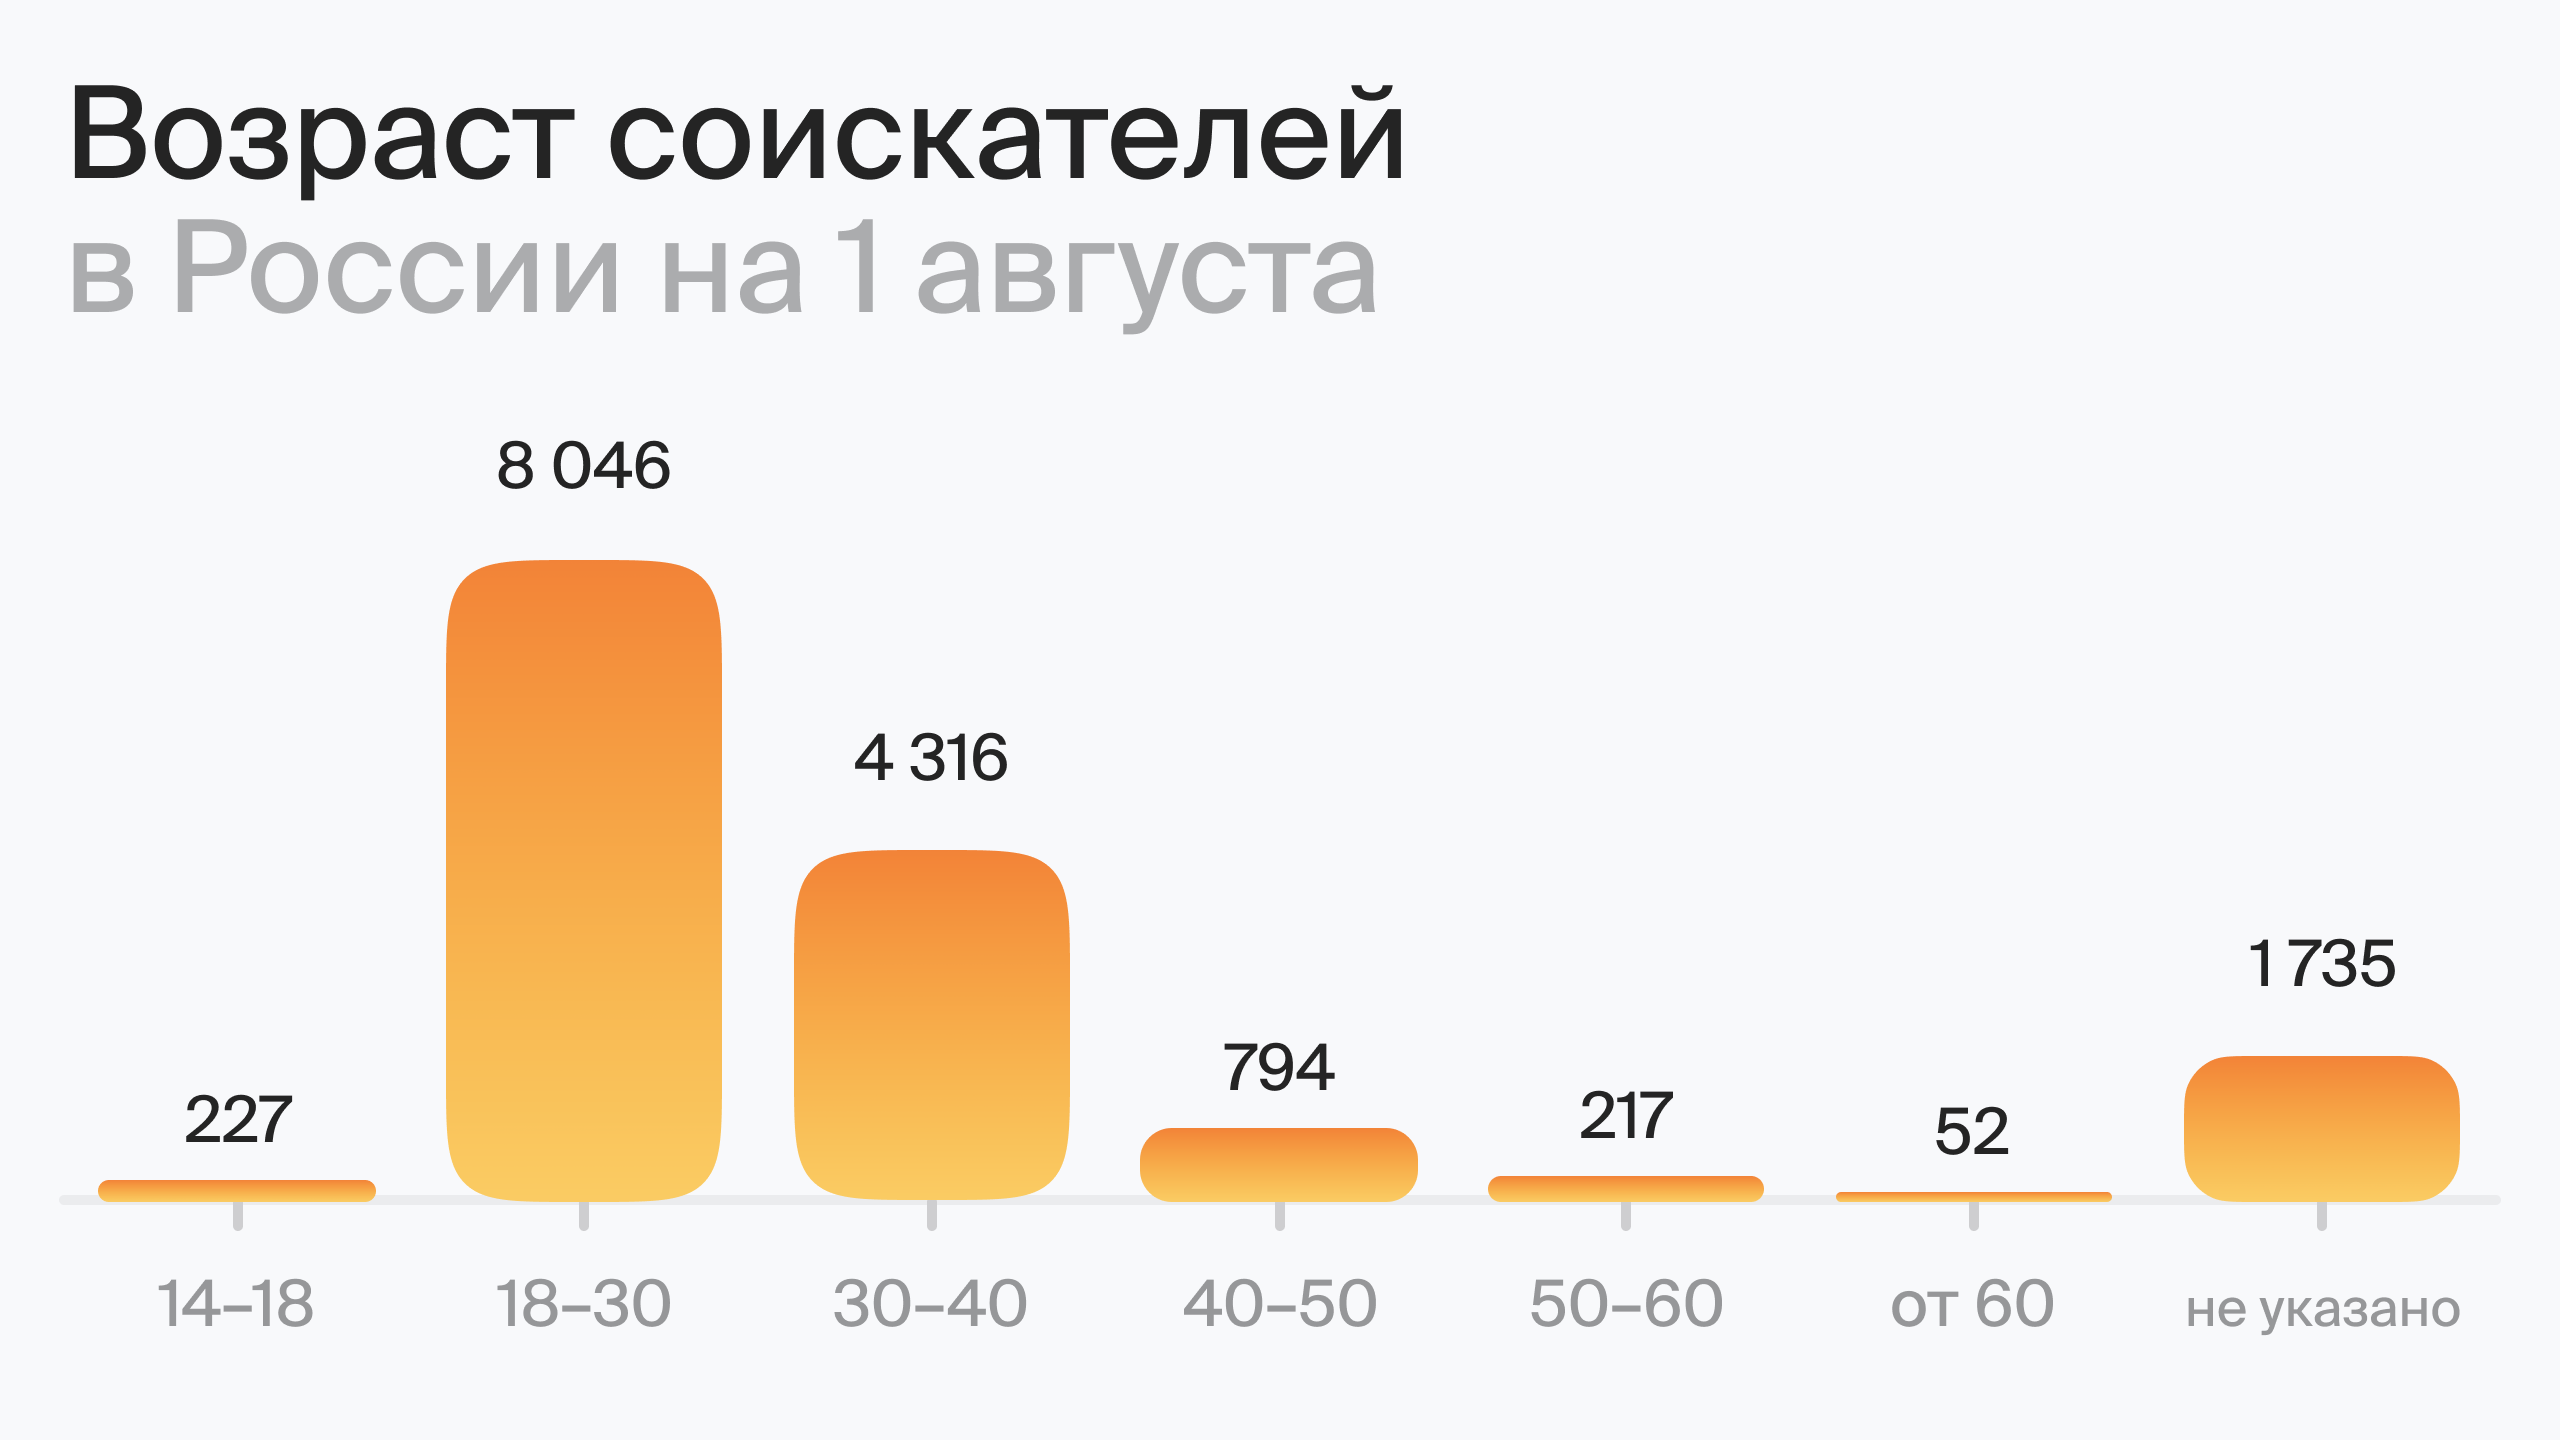 Возраст соискателей в России на 1 августа (по данным hh.ru) 